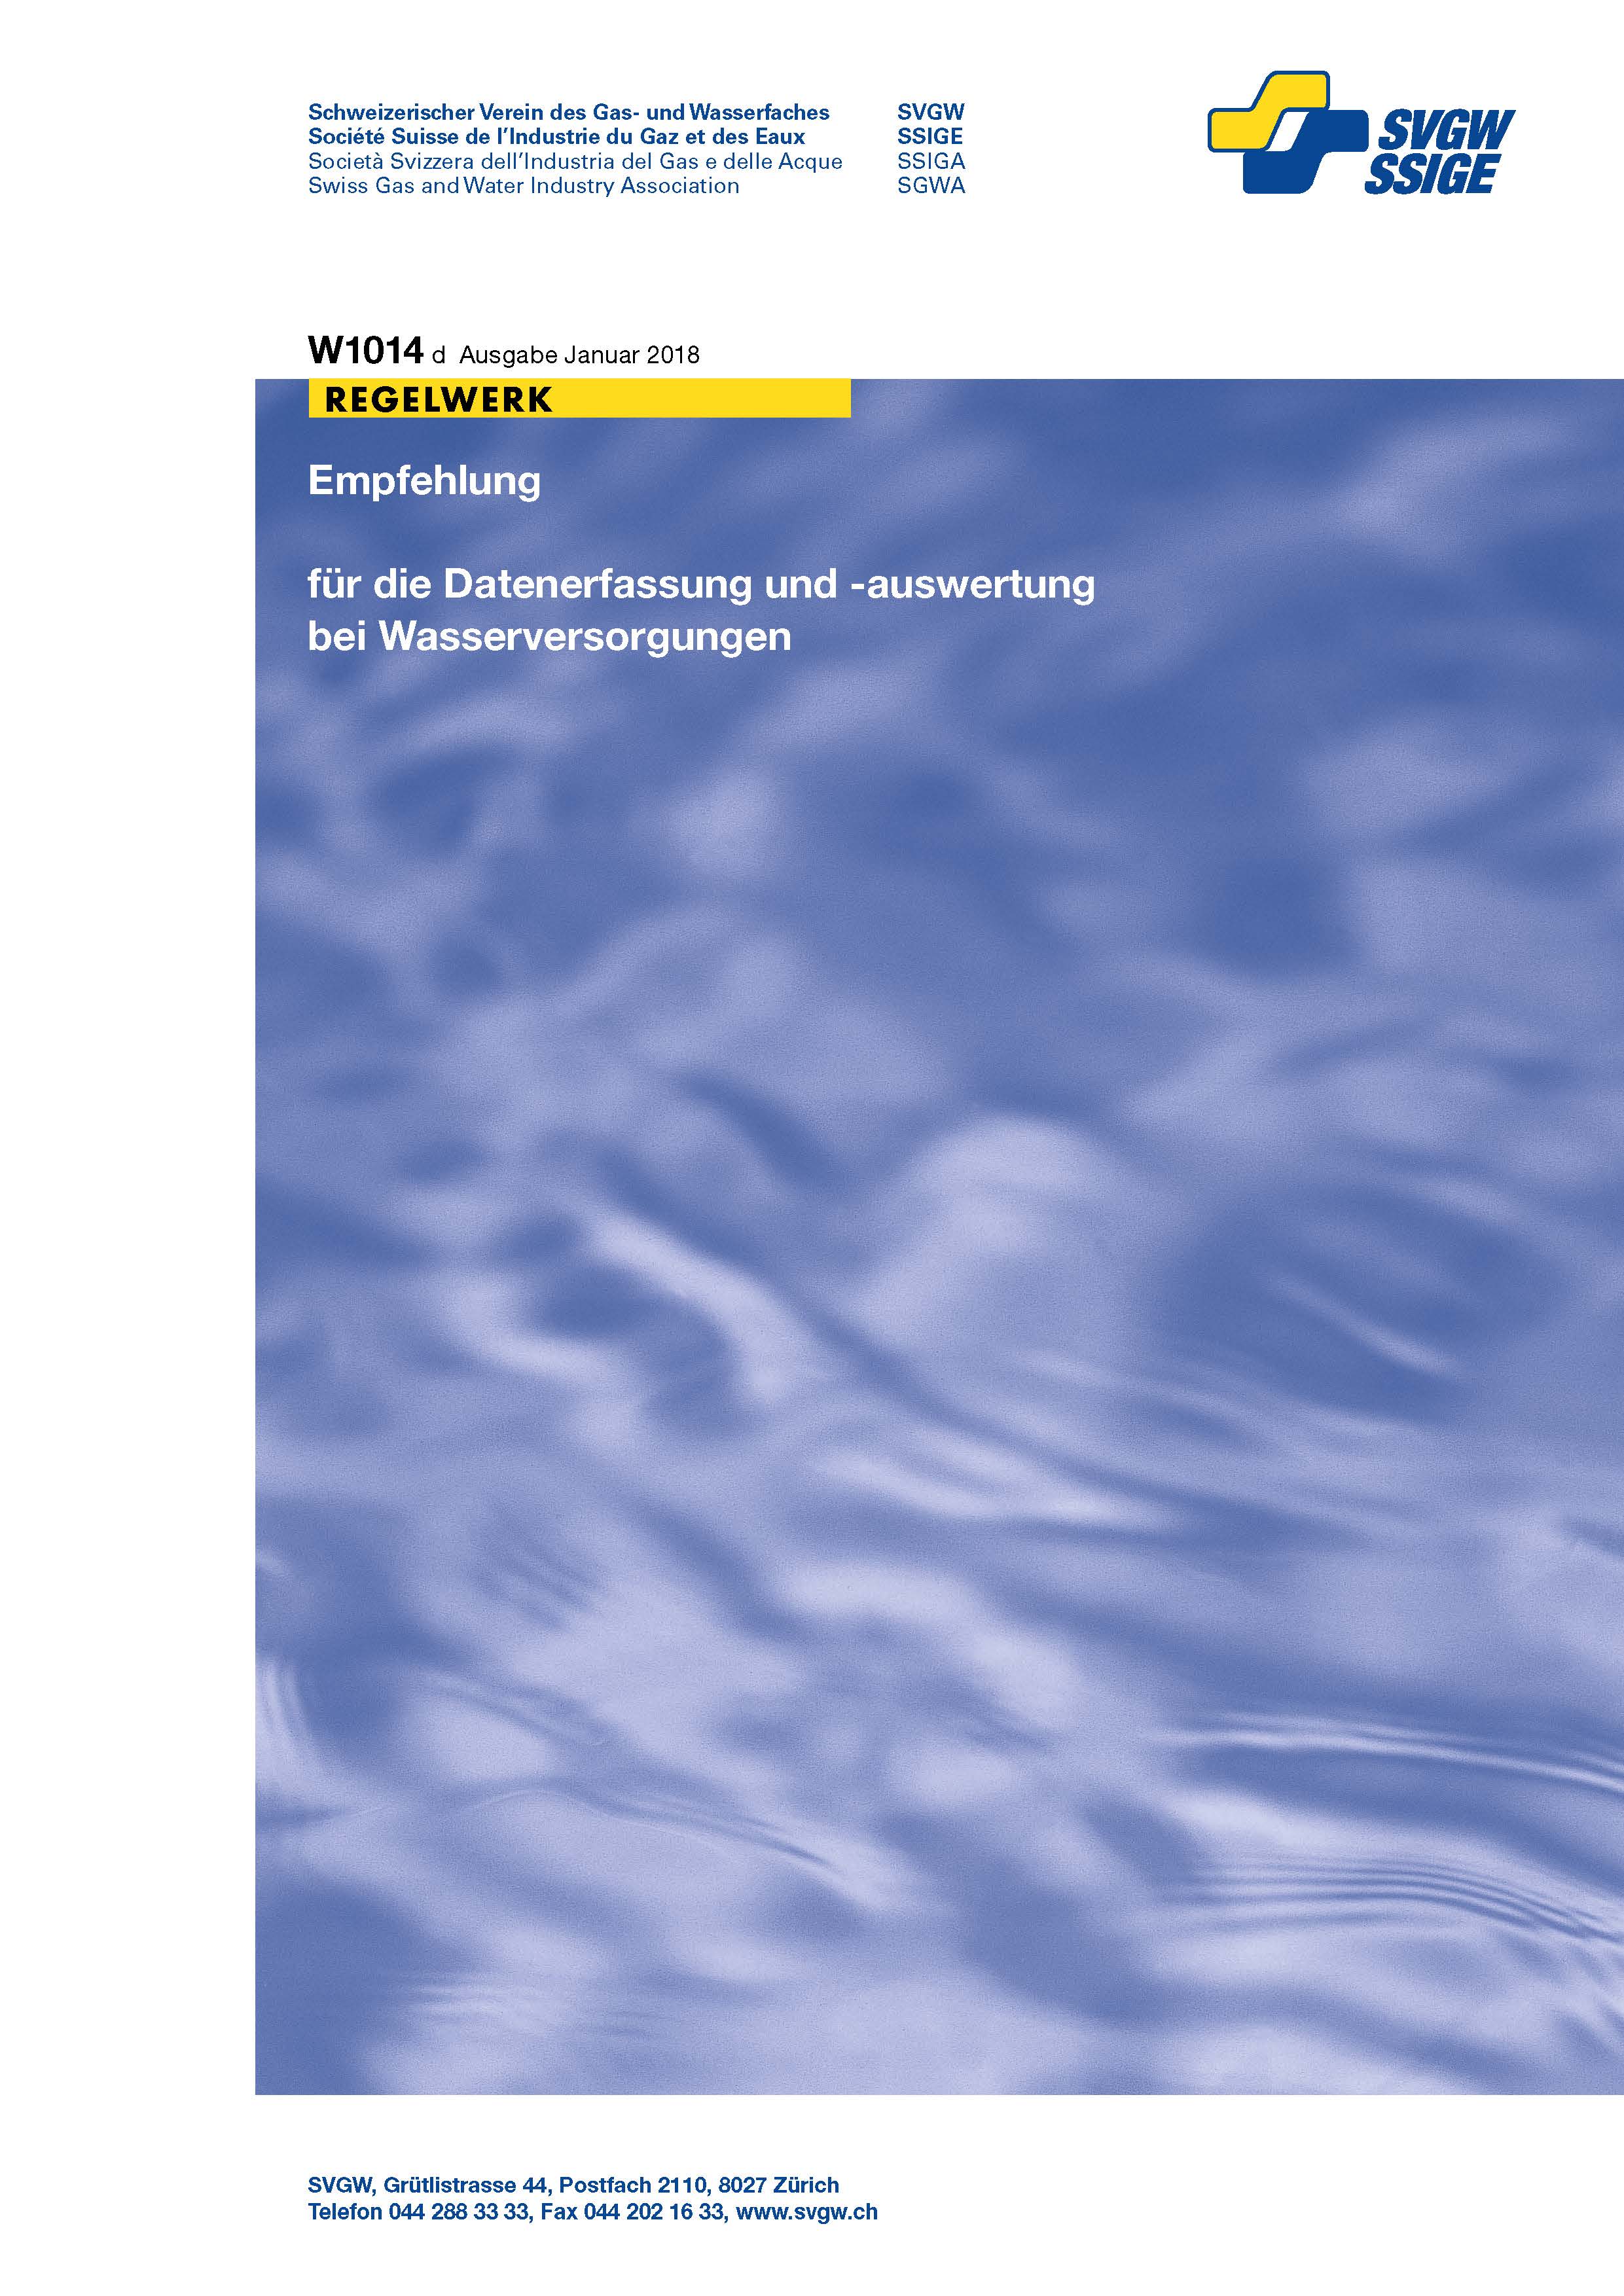 W1014 d Empfehlung für die Datenerfassung und -auswertung bei Wasserversorgungen (2)